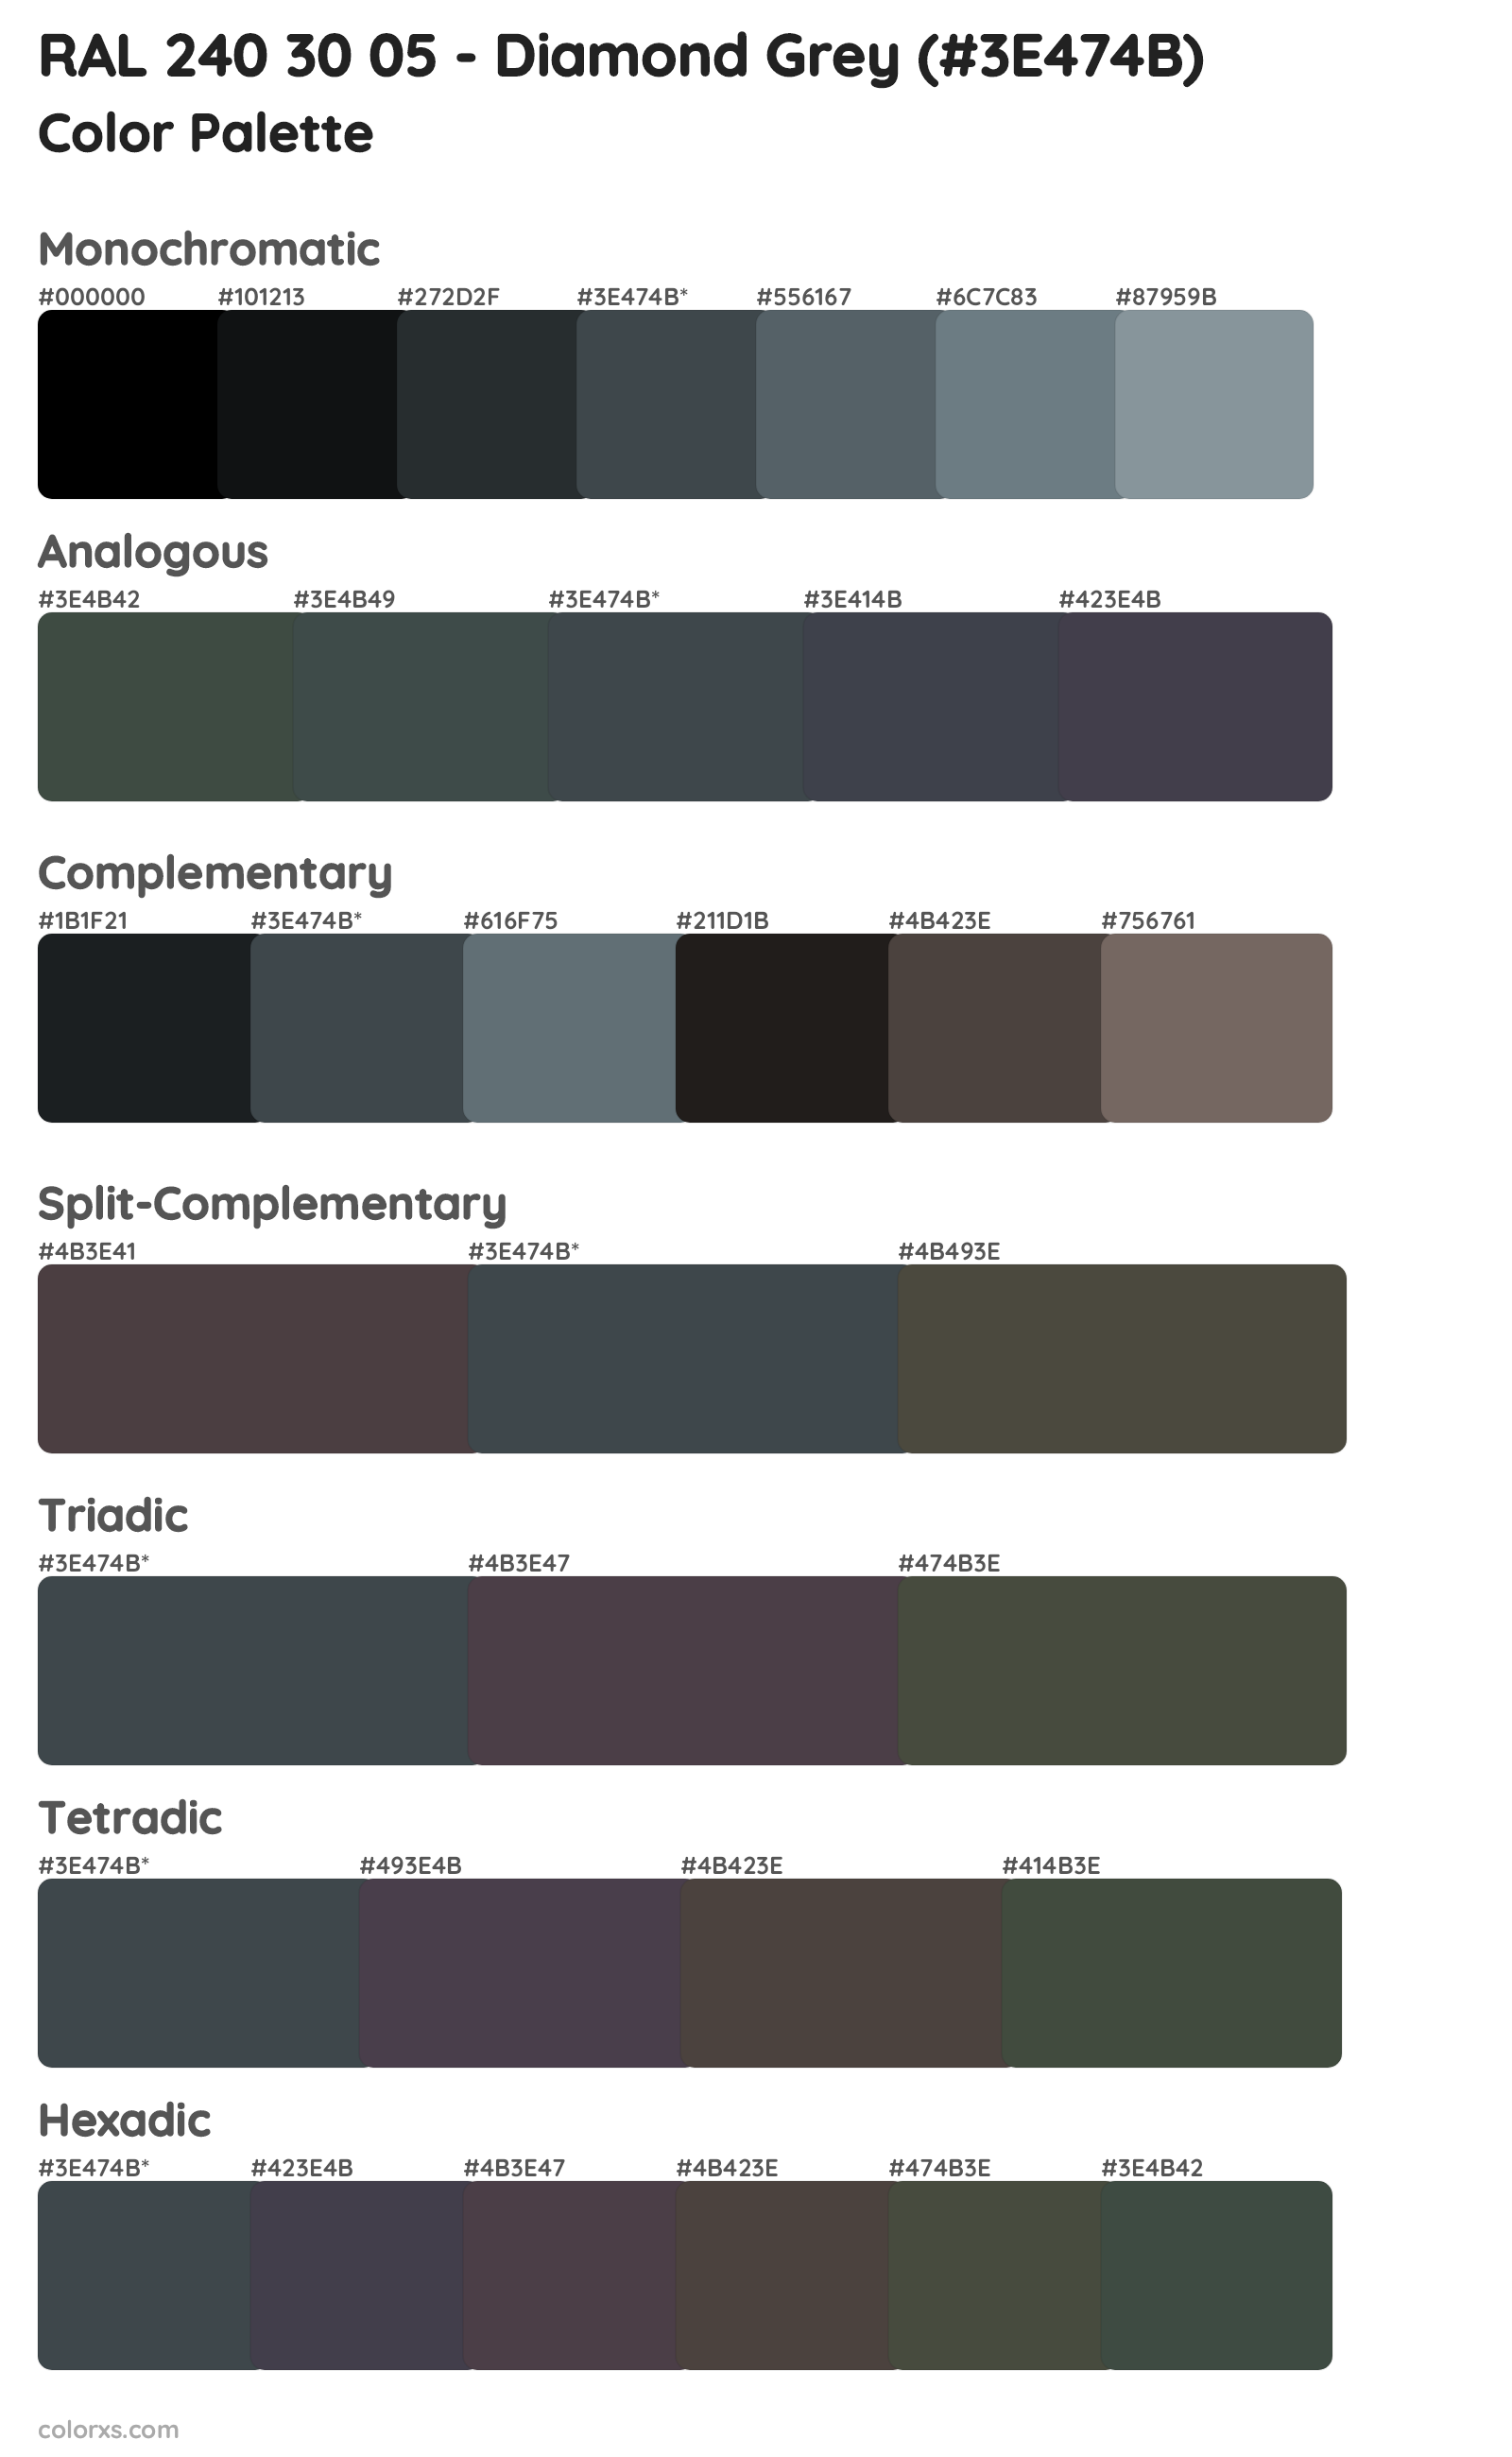 RAL 240 30 05 - Diamond Grey Color Scheme Palettes